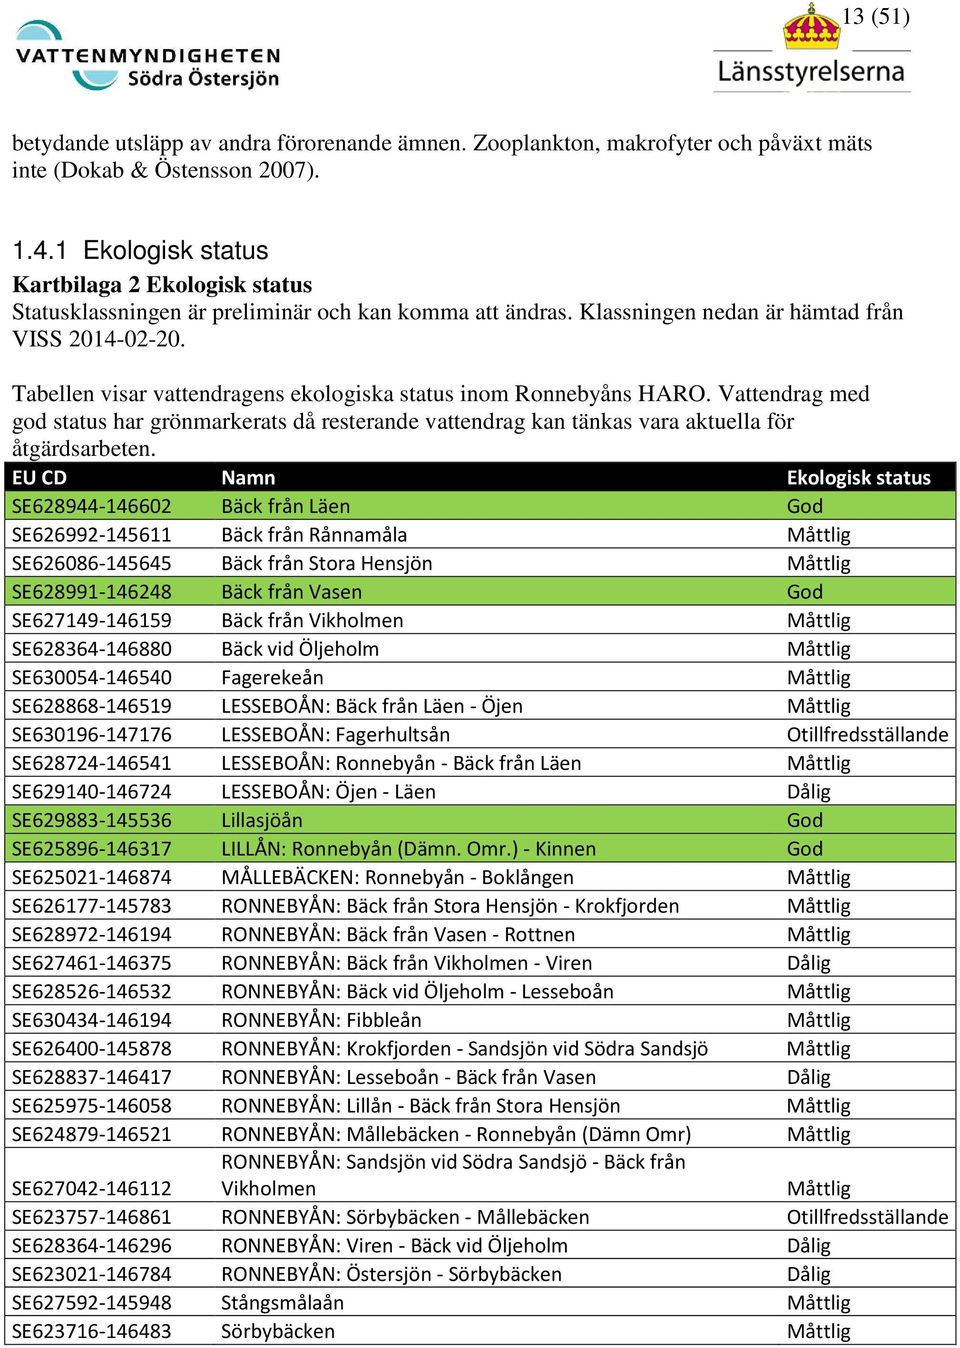 Tabellen visar vattendragens ekologiska status inom Ronnebyåns HARO. Vattendrag med god status har grönmarkerats då resterande vattendrag kan tänkas vara aktuella för åtgärdsarbeten.